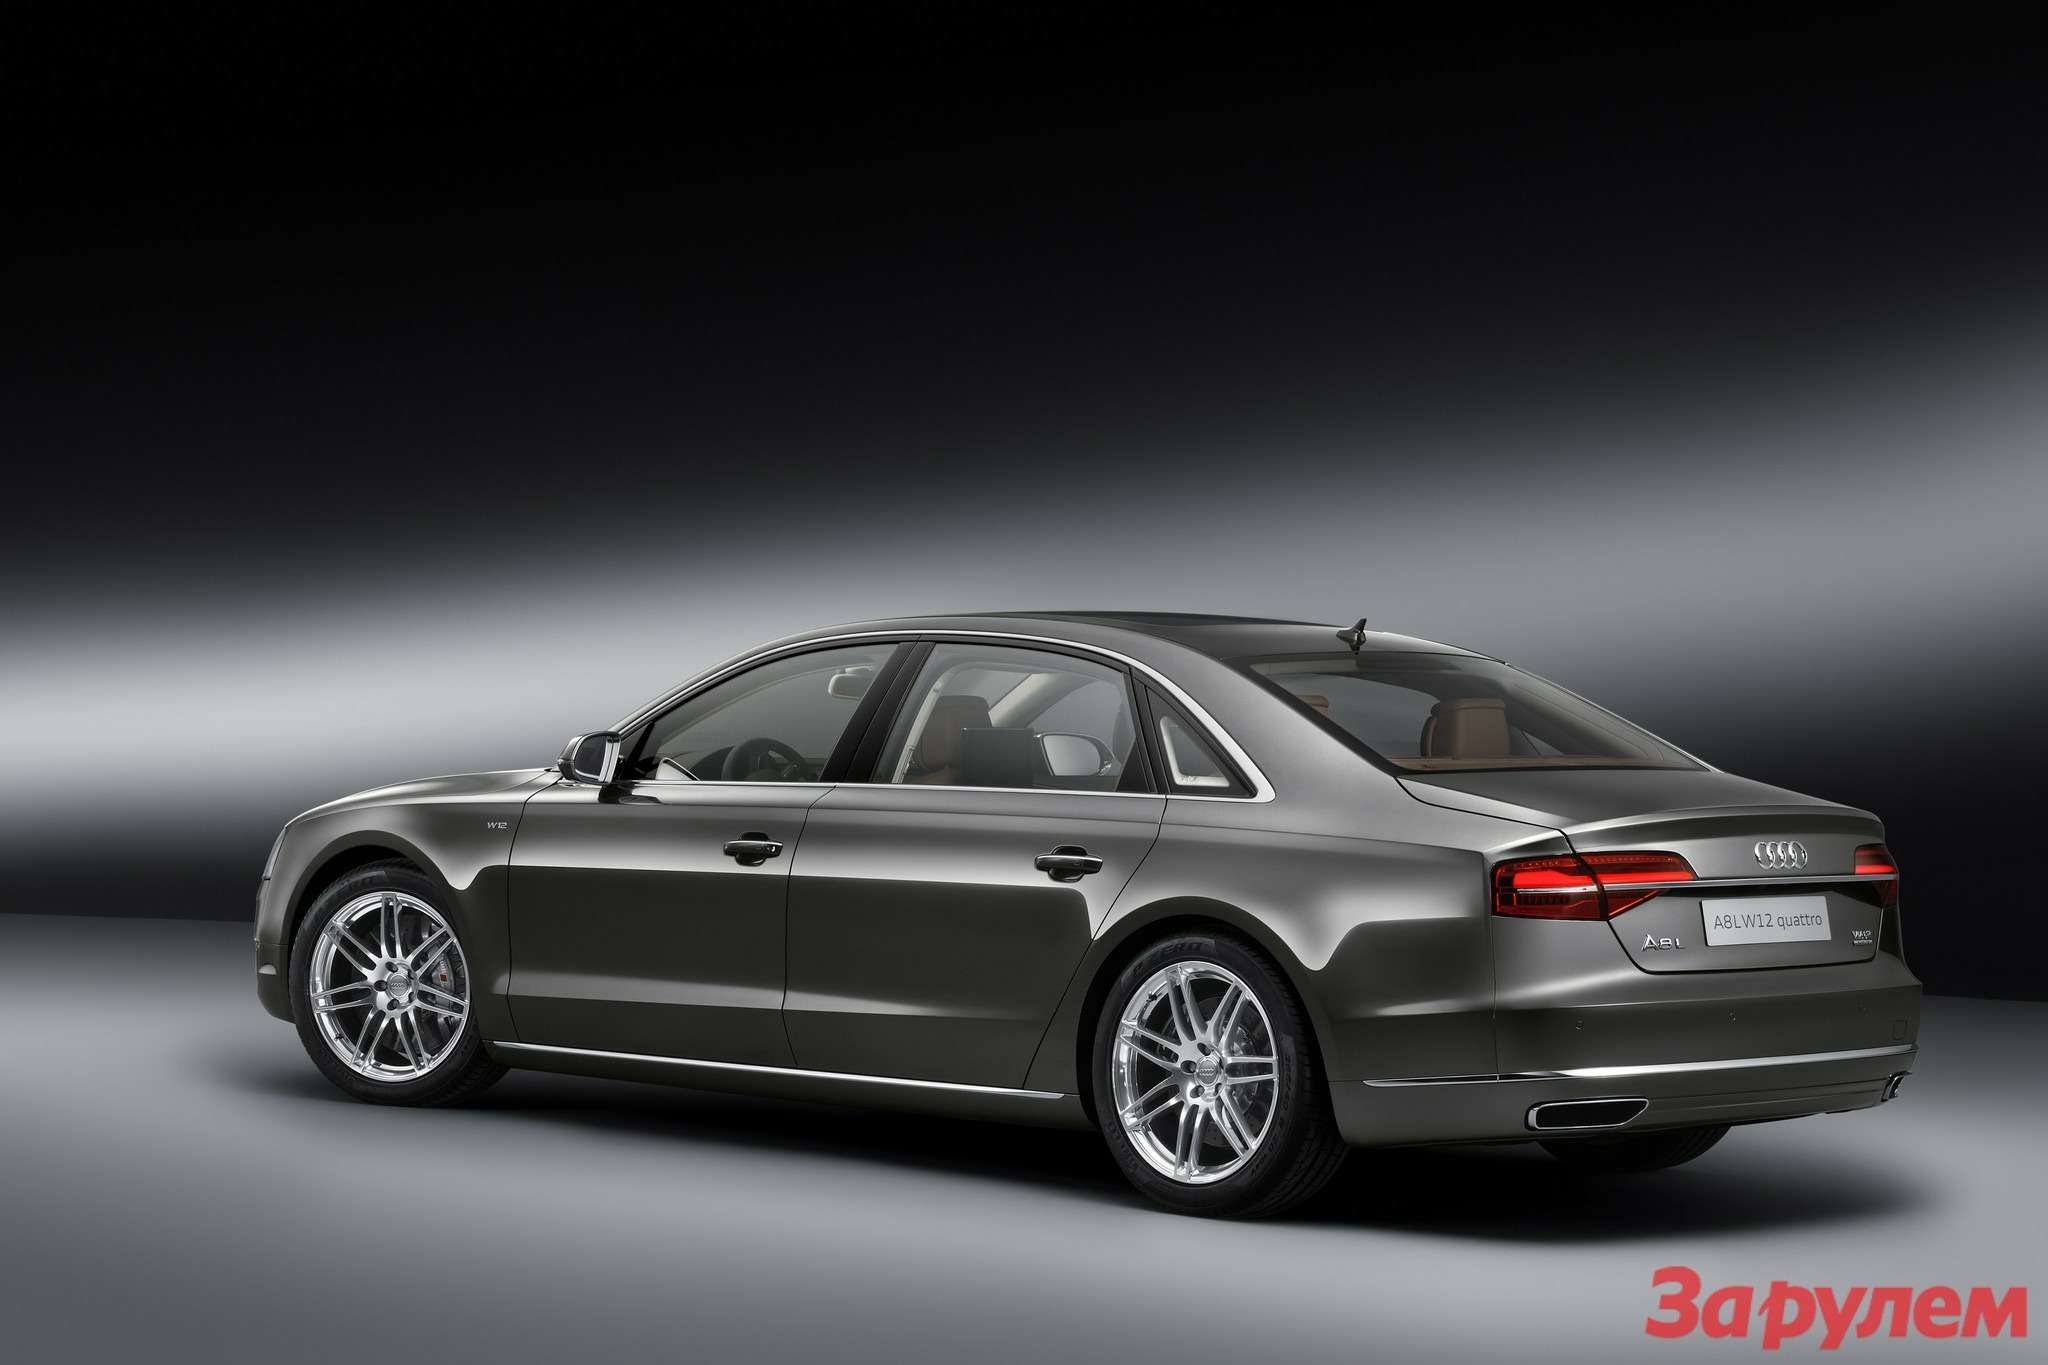 A8 Audi exclusive concept